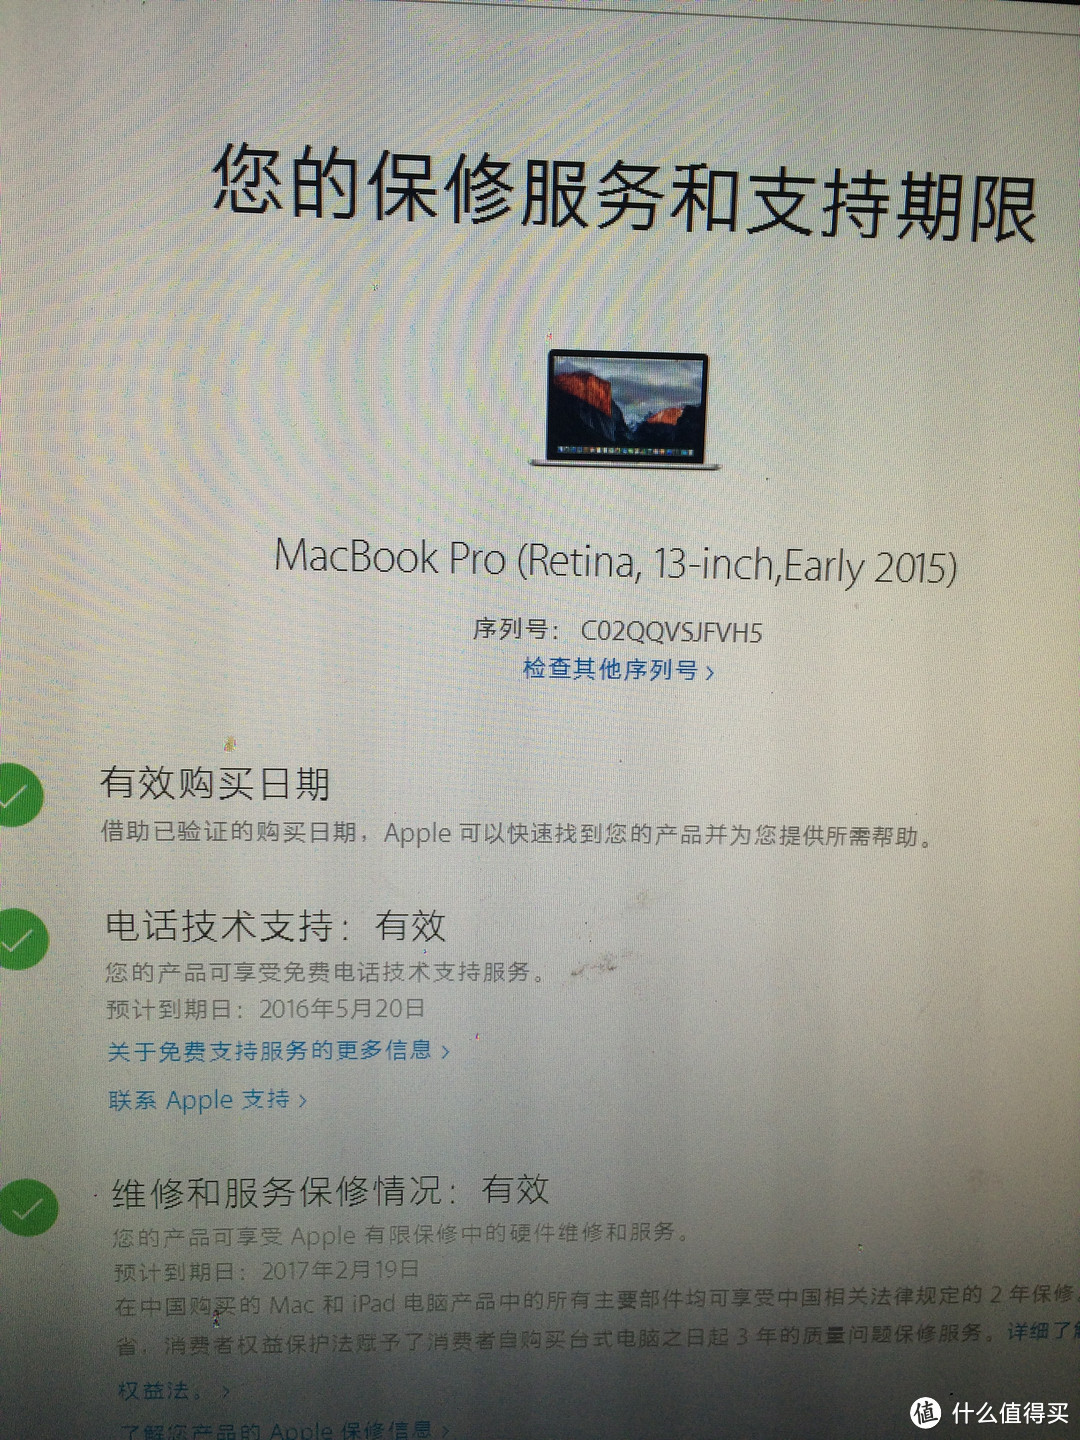 新年给自己的礼物，MacBook pro13寸840开箱！